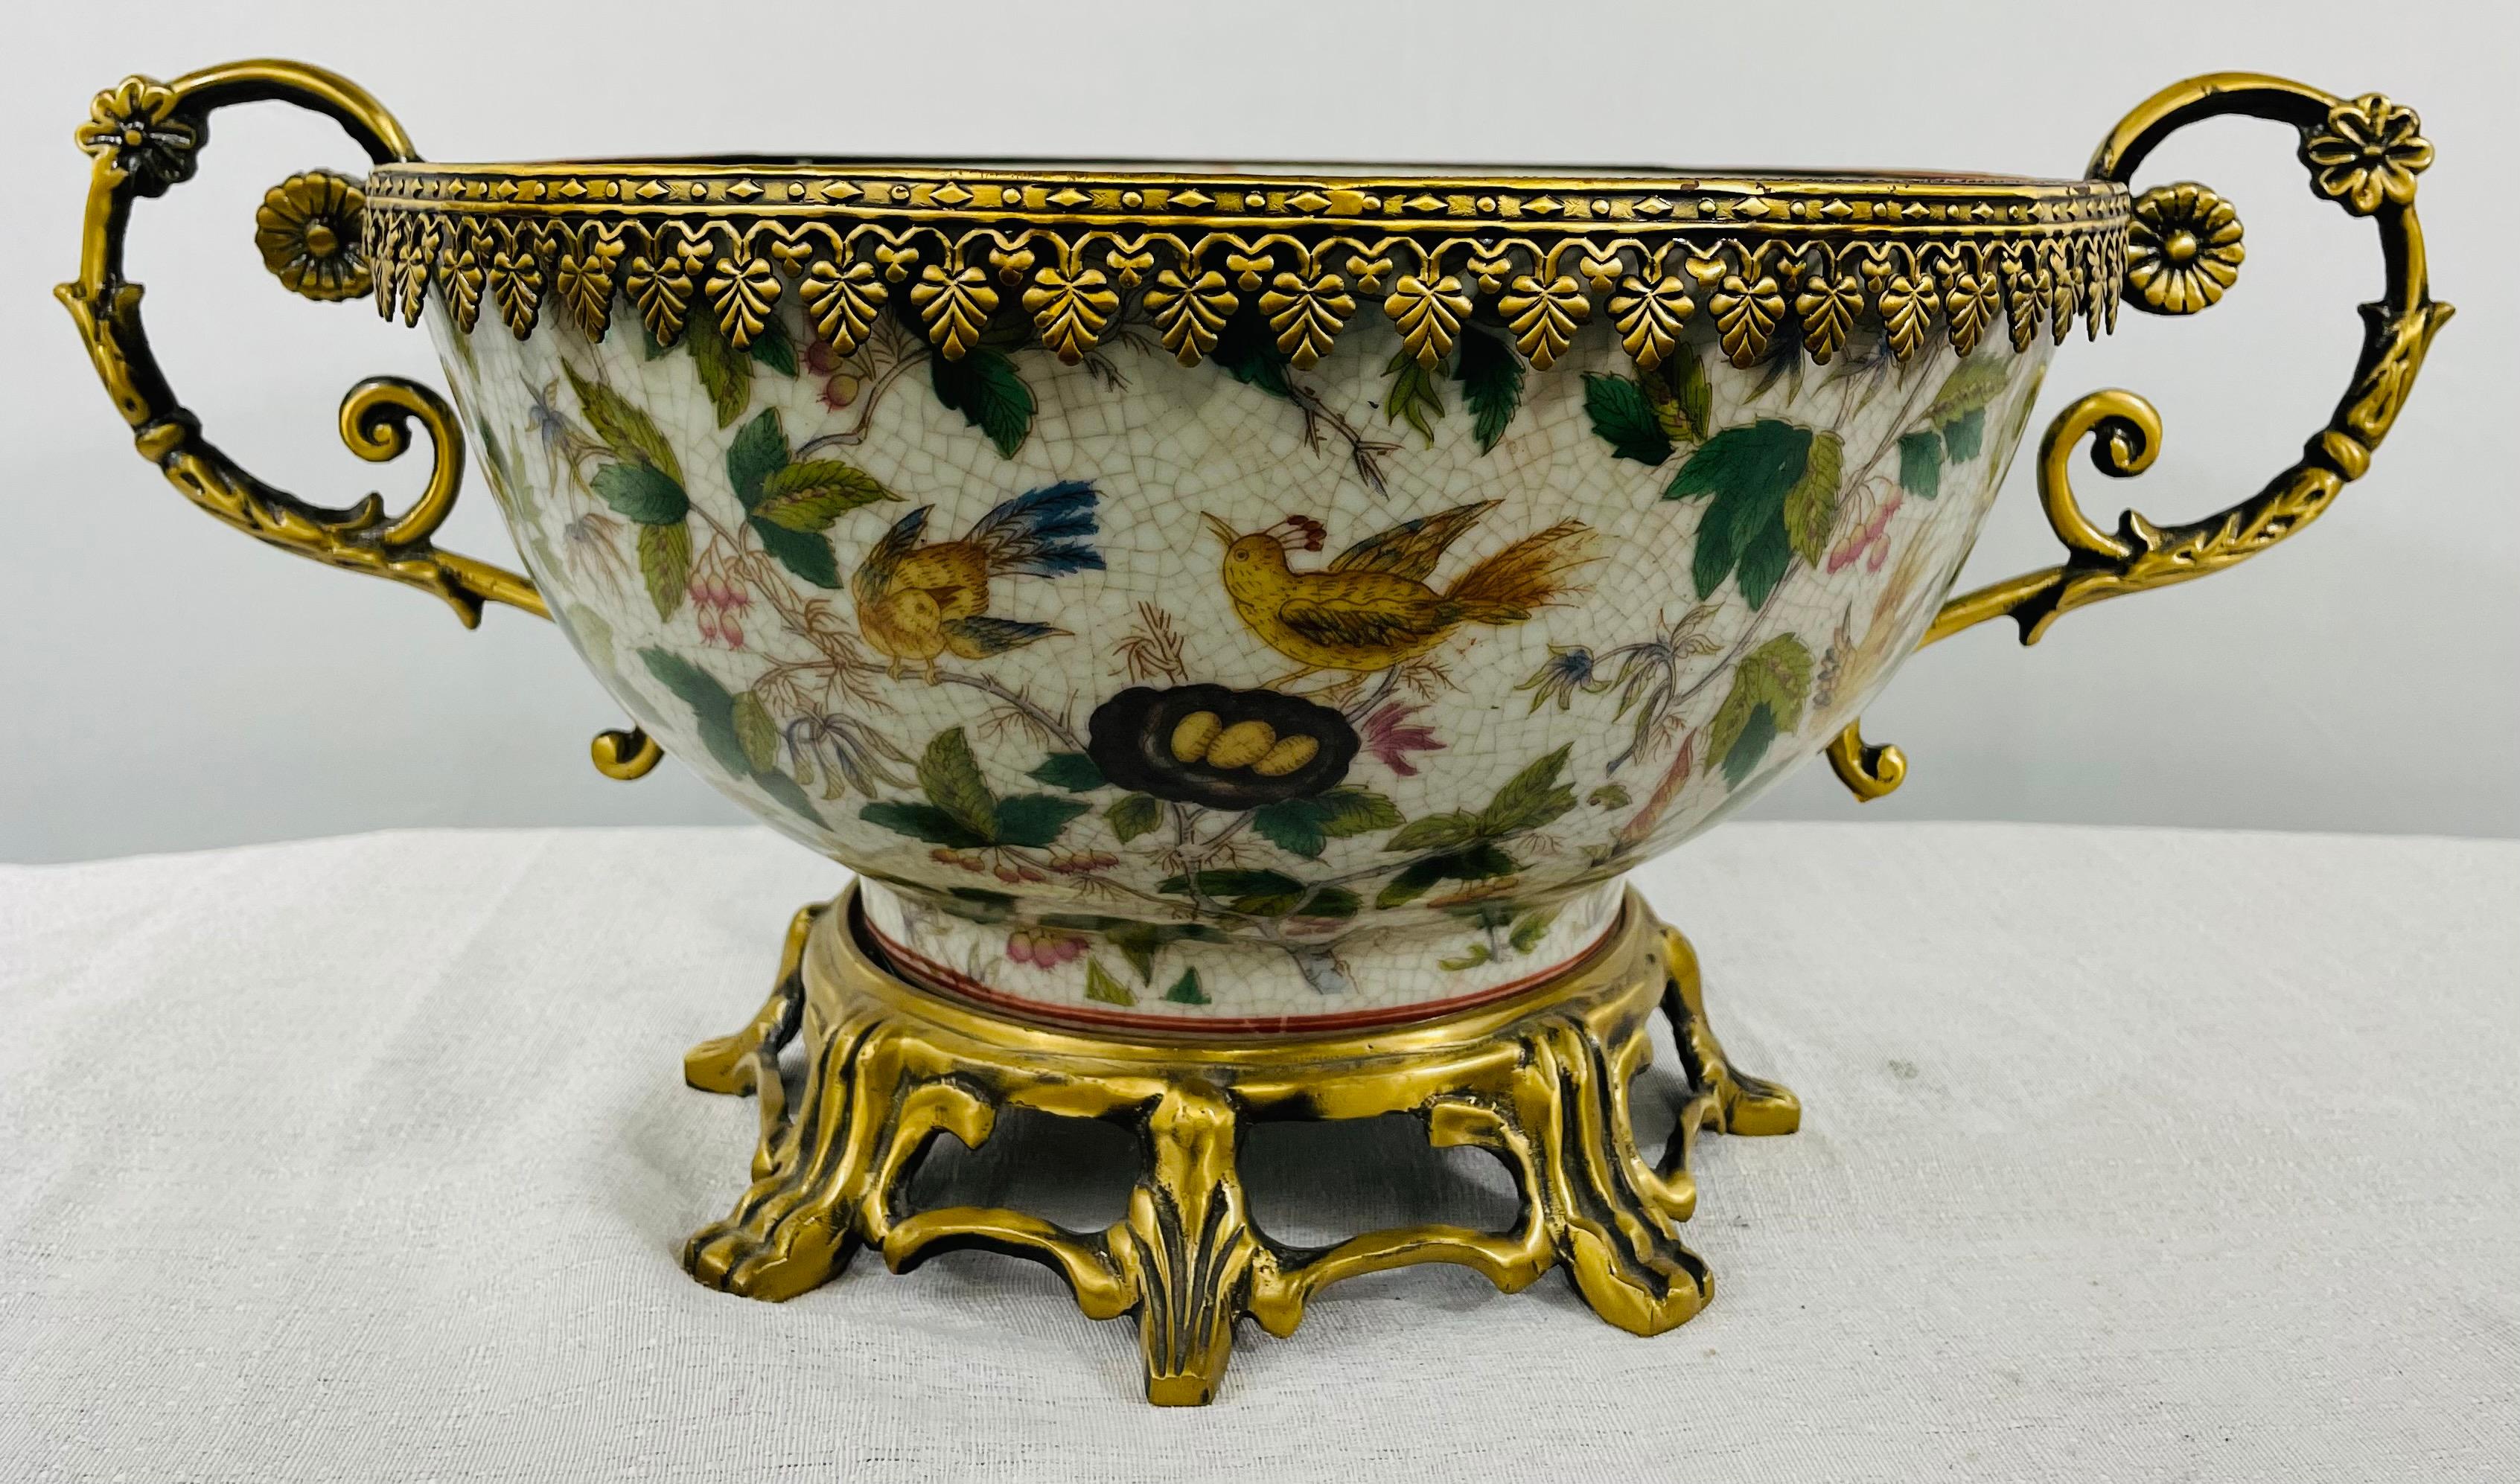 Eine exquisite, in Bronze gefasste chinesische Exportschale im Louis XV-Stil. Die Porzellanschale ist fein von Hand mit exotischen Vögeln, Drachenfrüchten und Pflanzen bemalt. Die Schale hat zwei bronzene Henkel mit floralem Muster, einen Rand mit